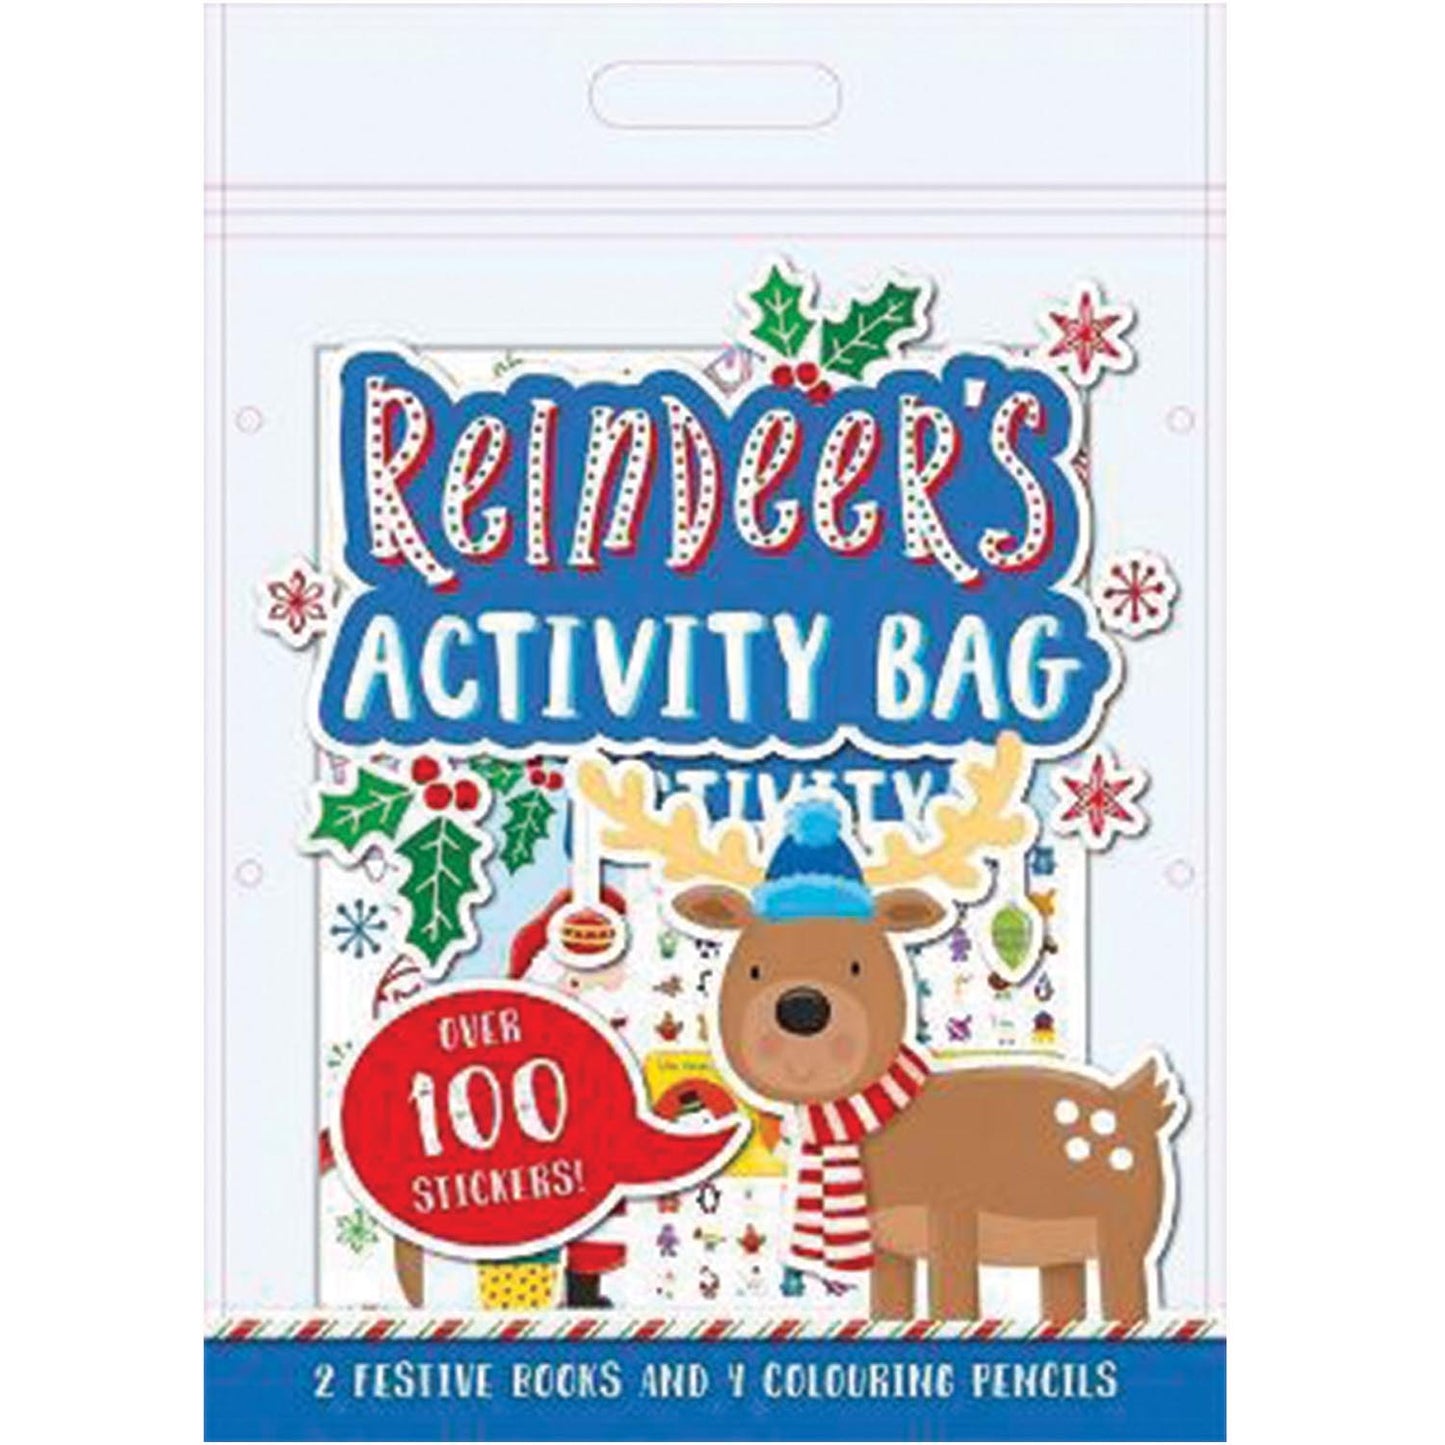 Reindeer's Activity Bag